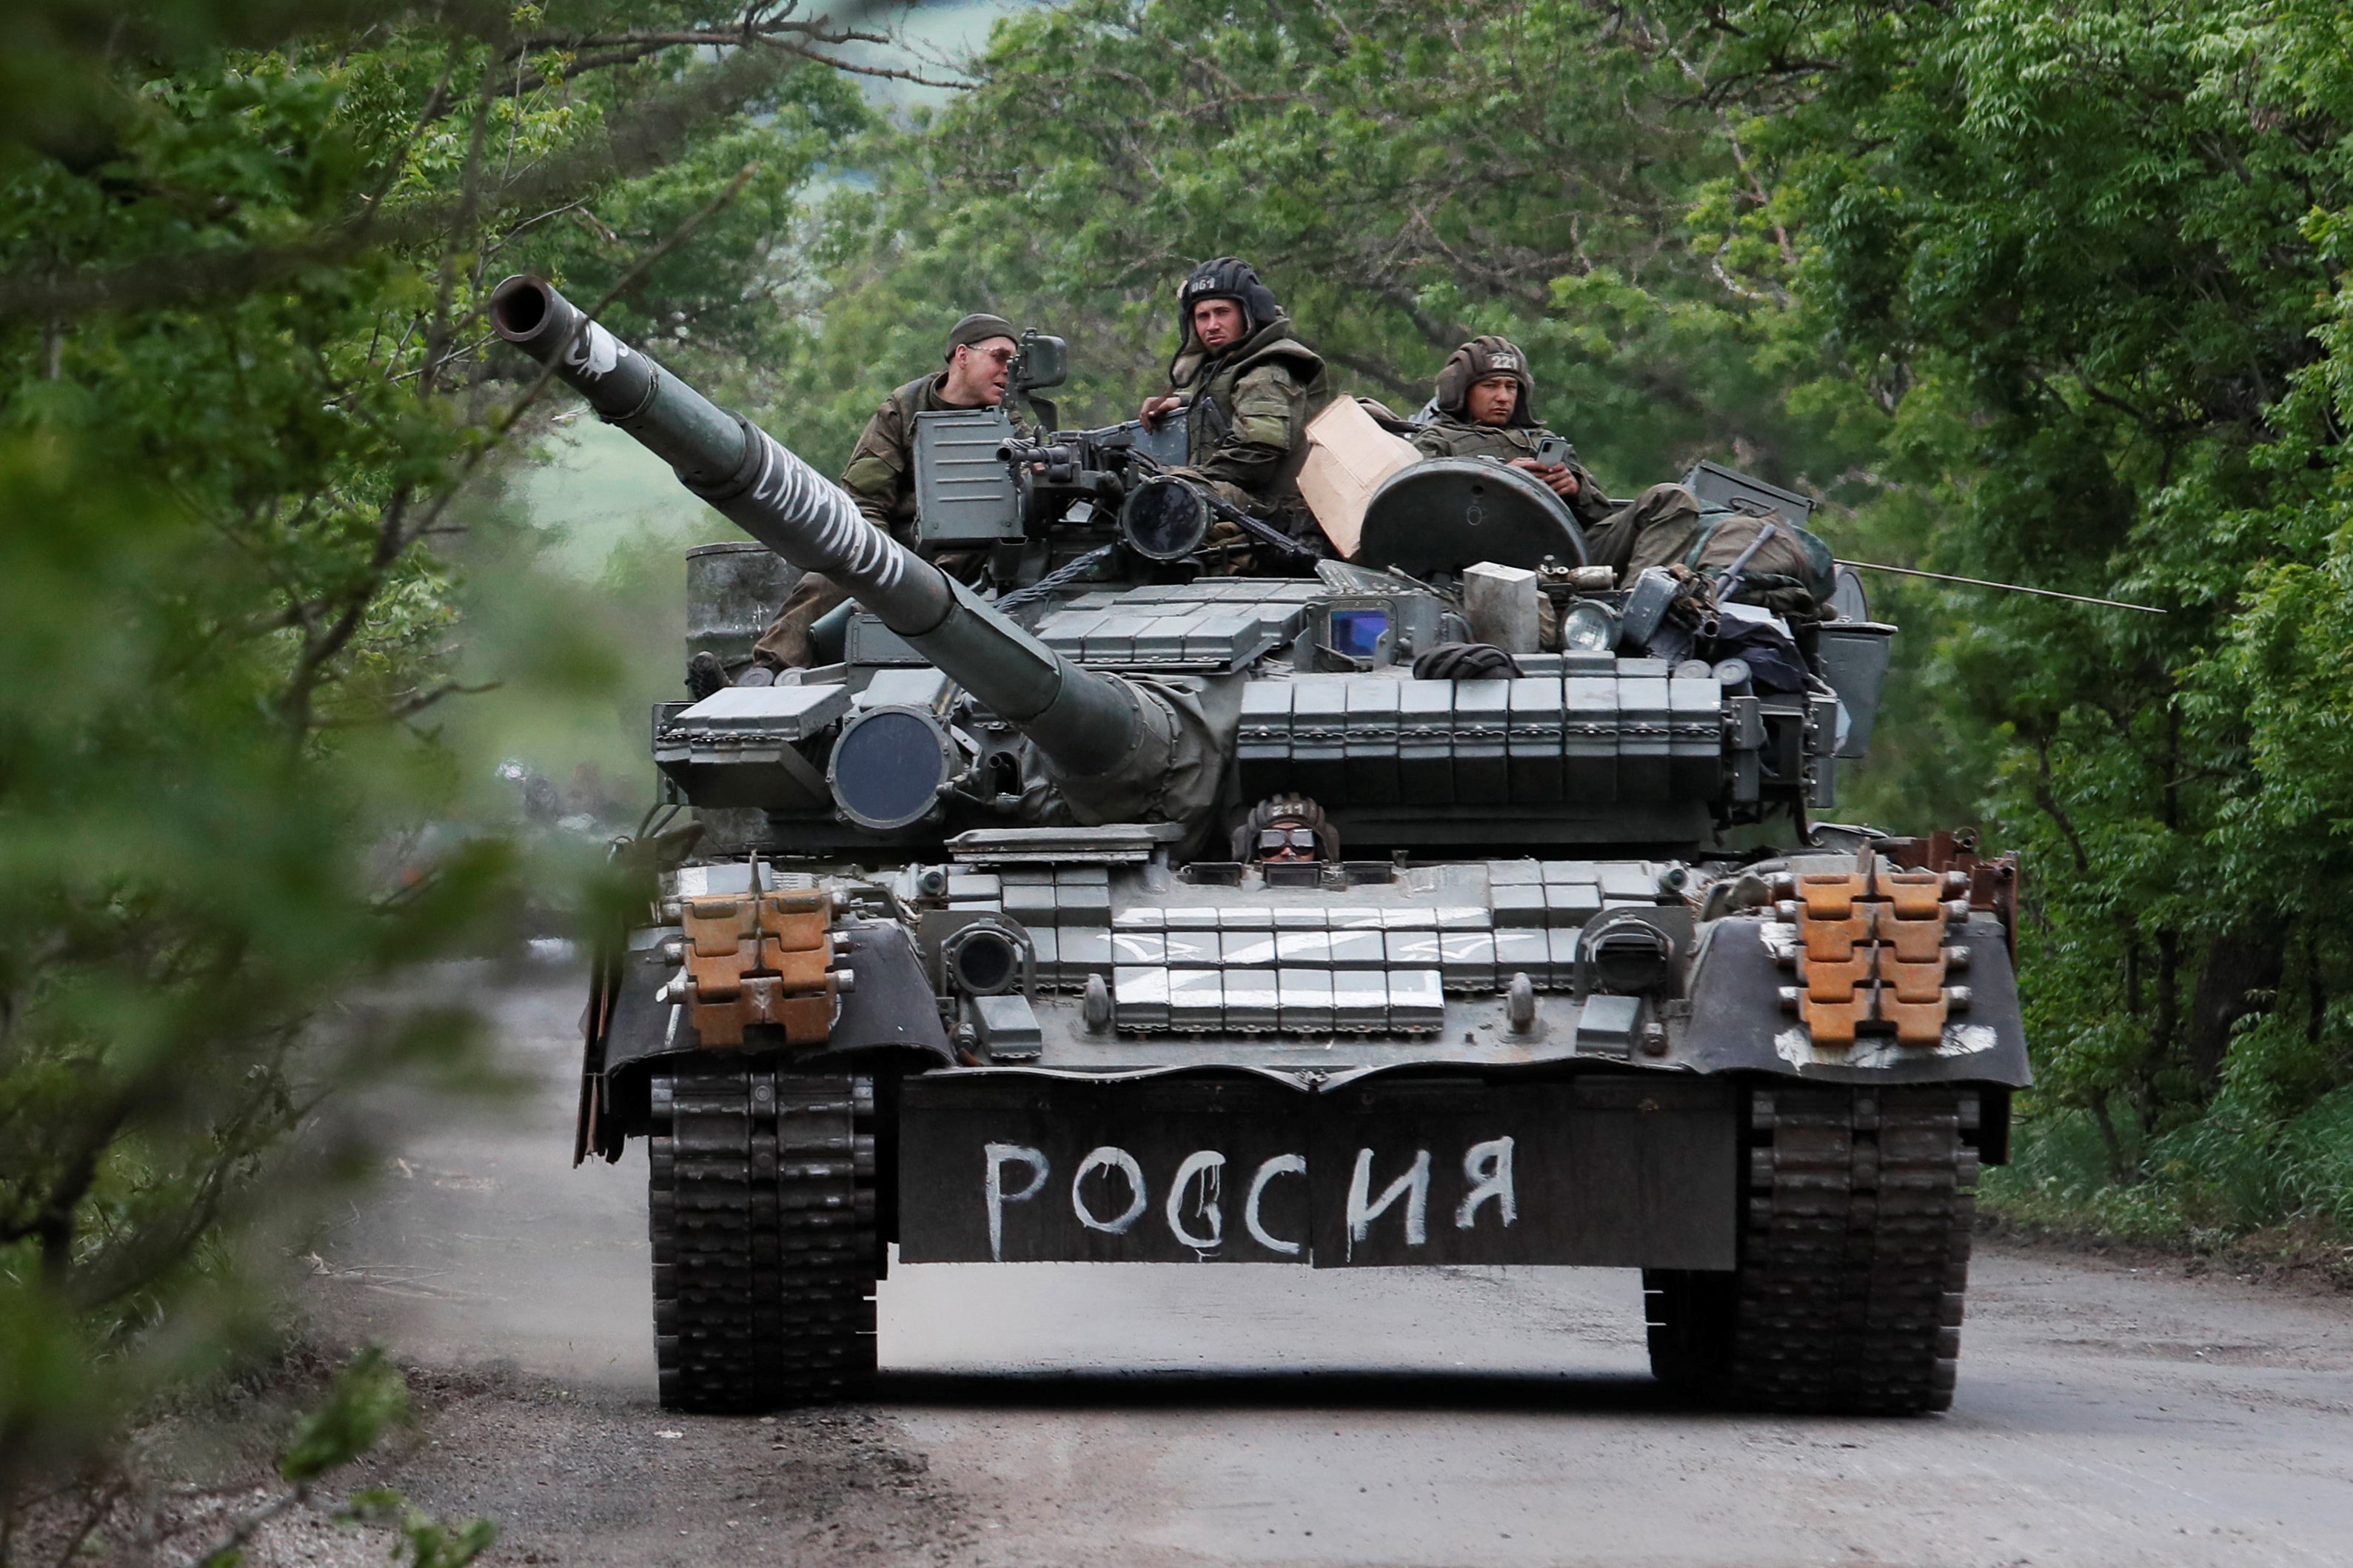 Miembros del servicio de las tropas prorrusas conducen un tanque durante el conflicto entre Ucrania y Rusia en la región de Donetsk. La escritura en el tanque dice: "Rusia". REUTERS/Alexander Ermochenko